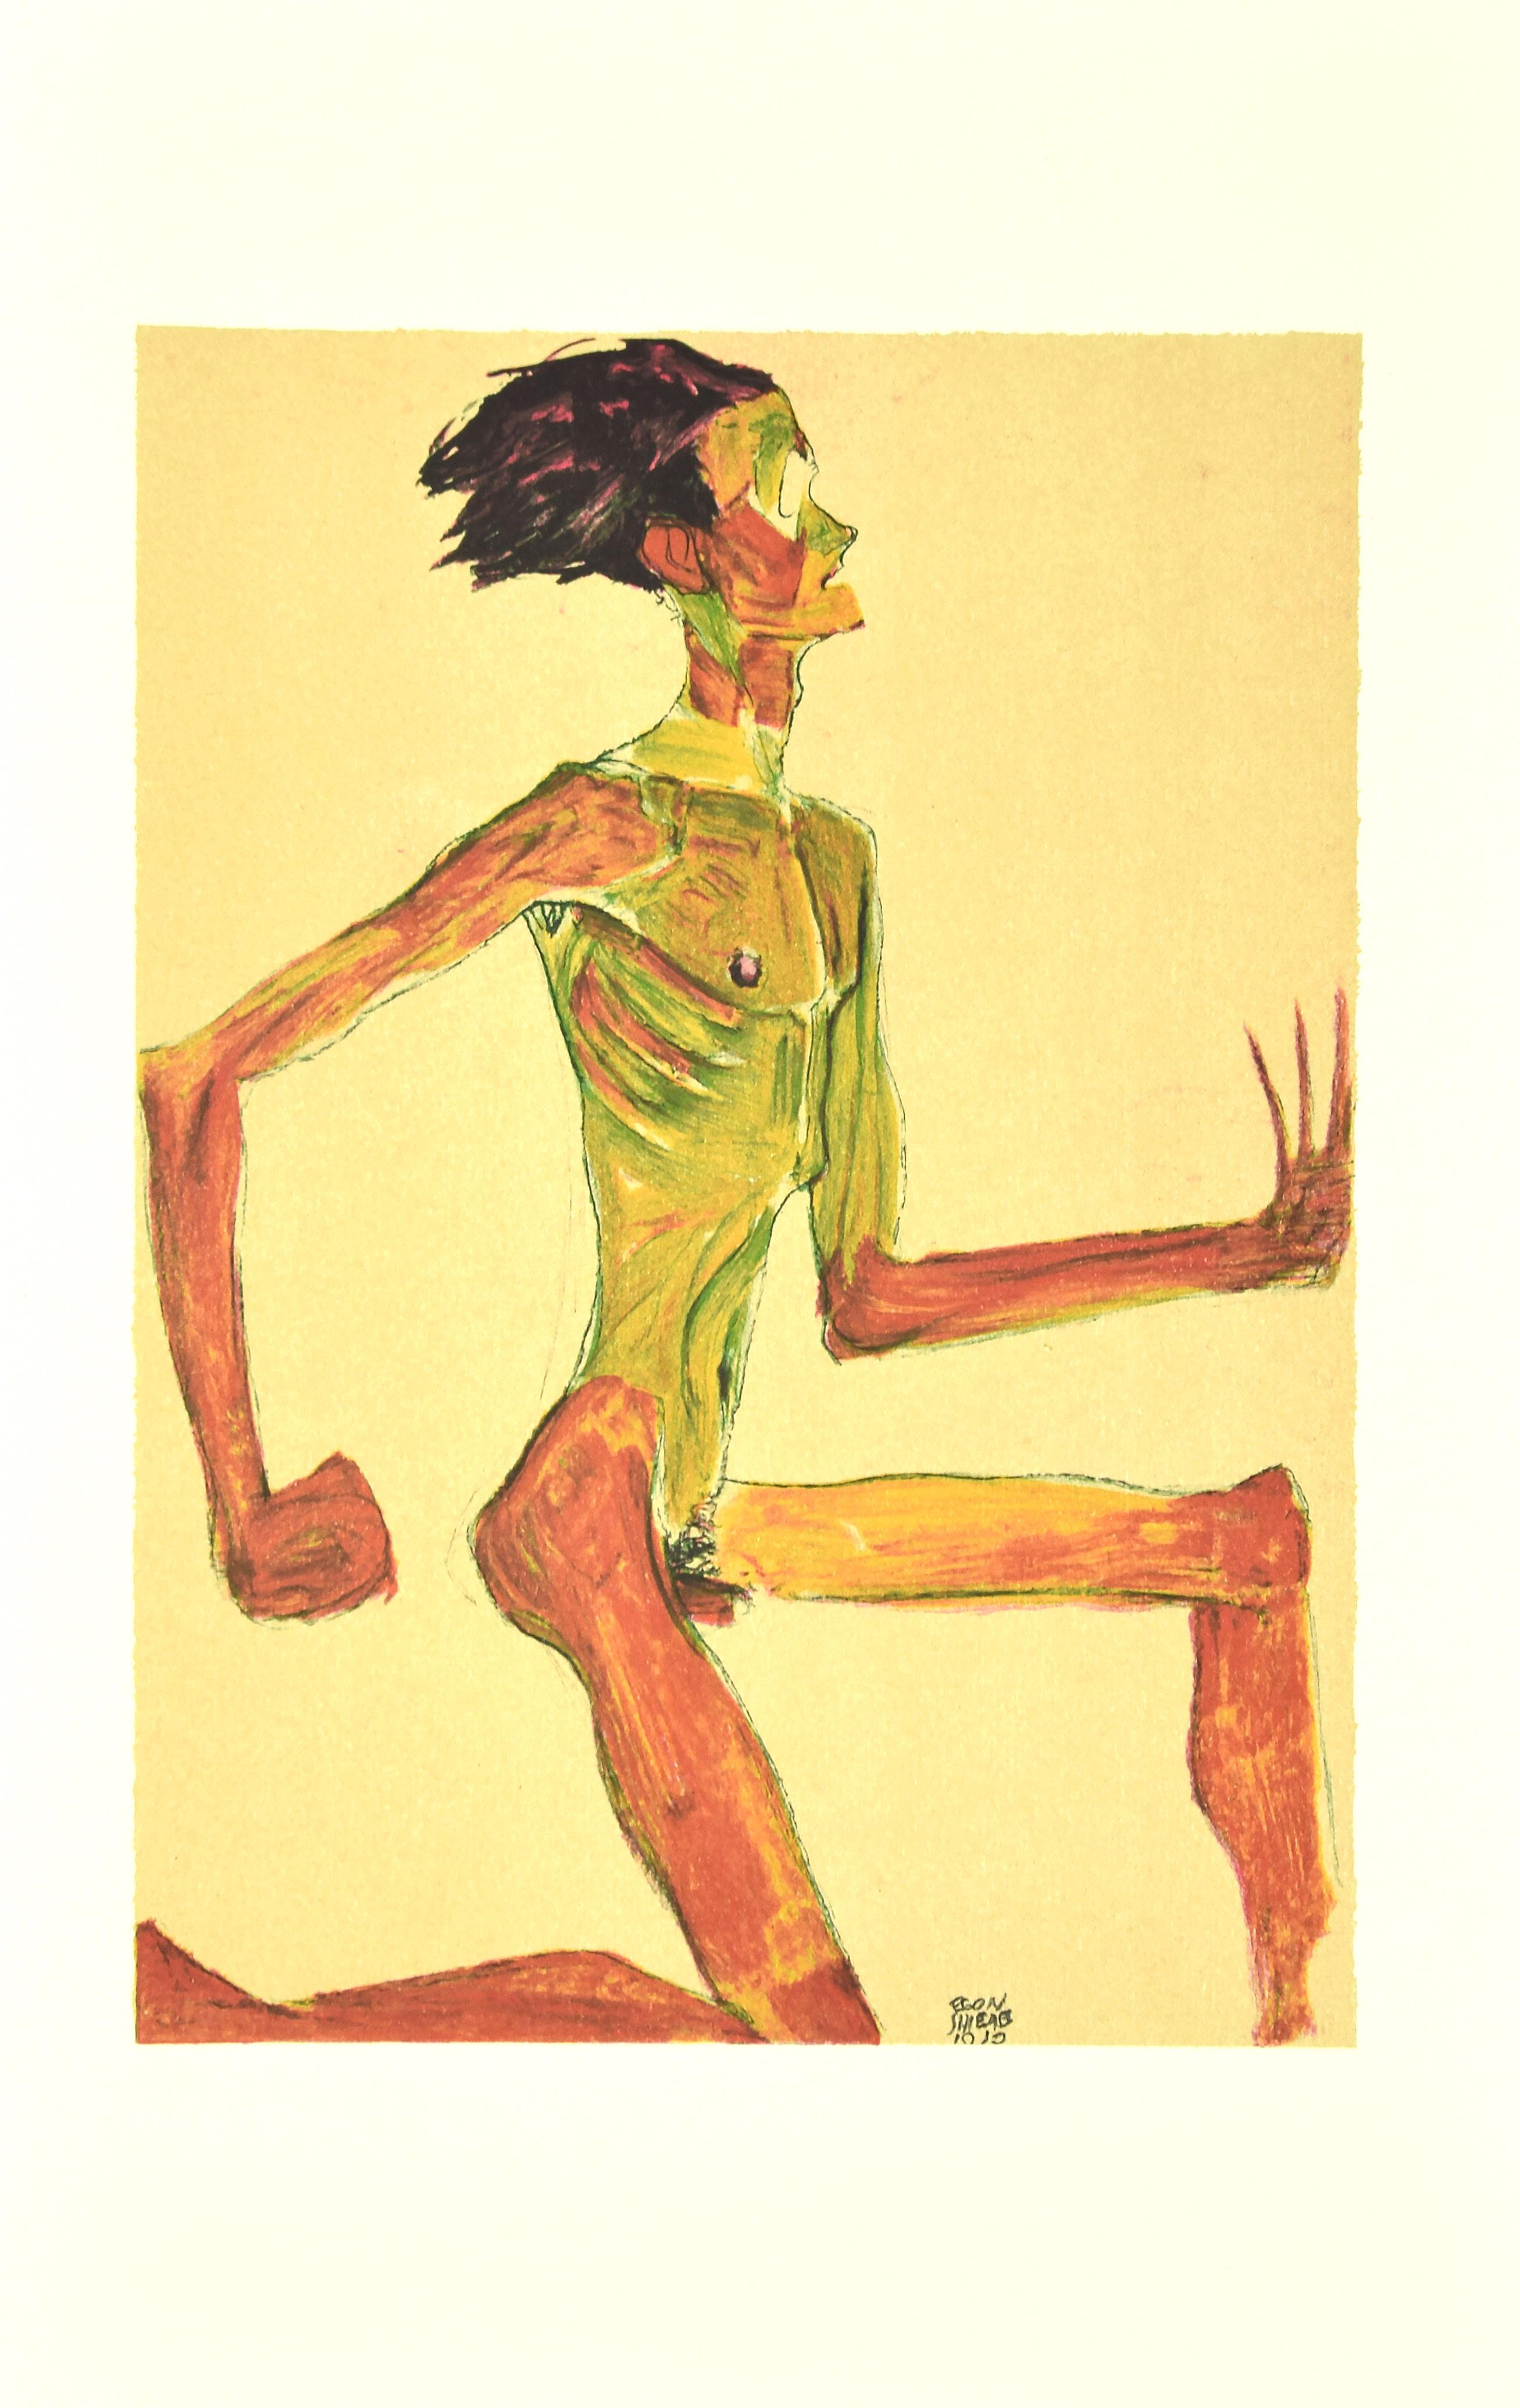 (after) Egon Schiele Nude Print - Kneeling Male Nude in Profile - Original Lithograph after E. Schiele